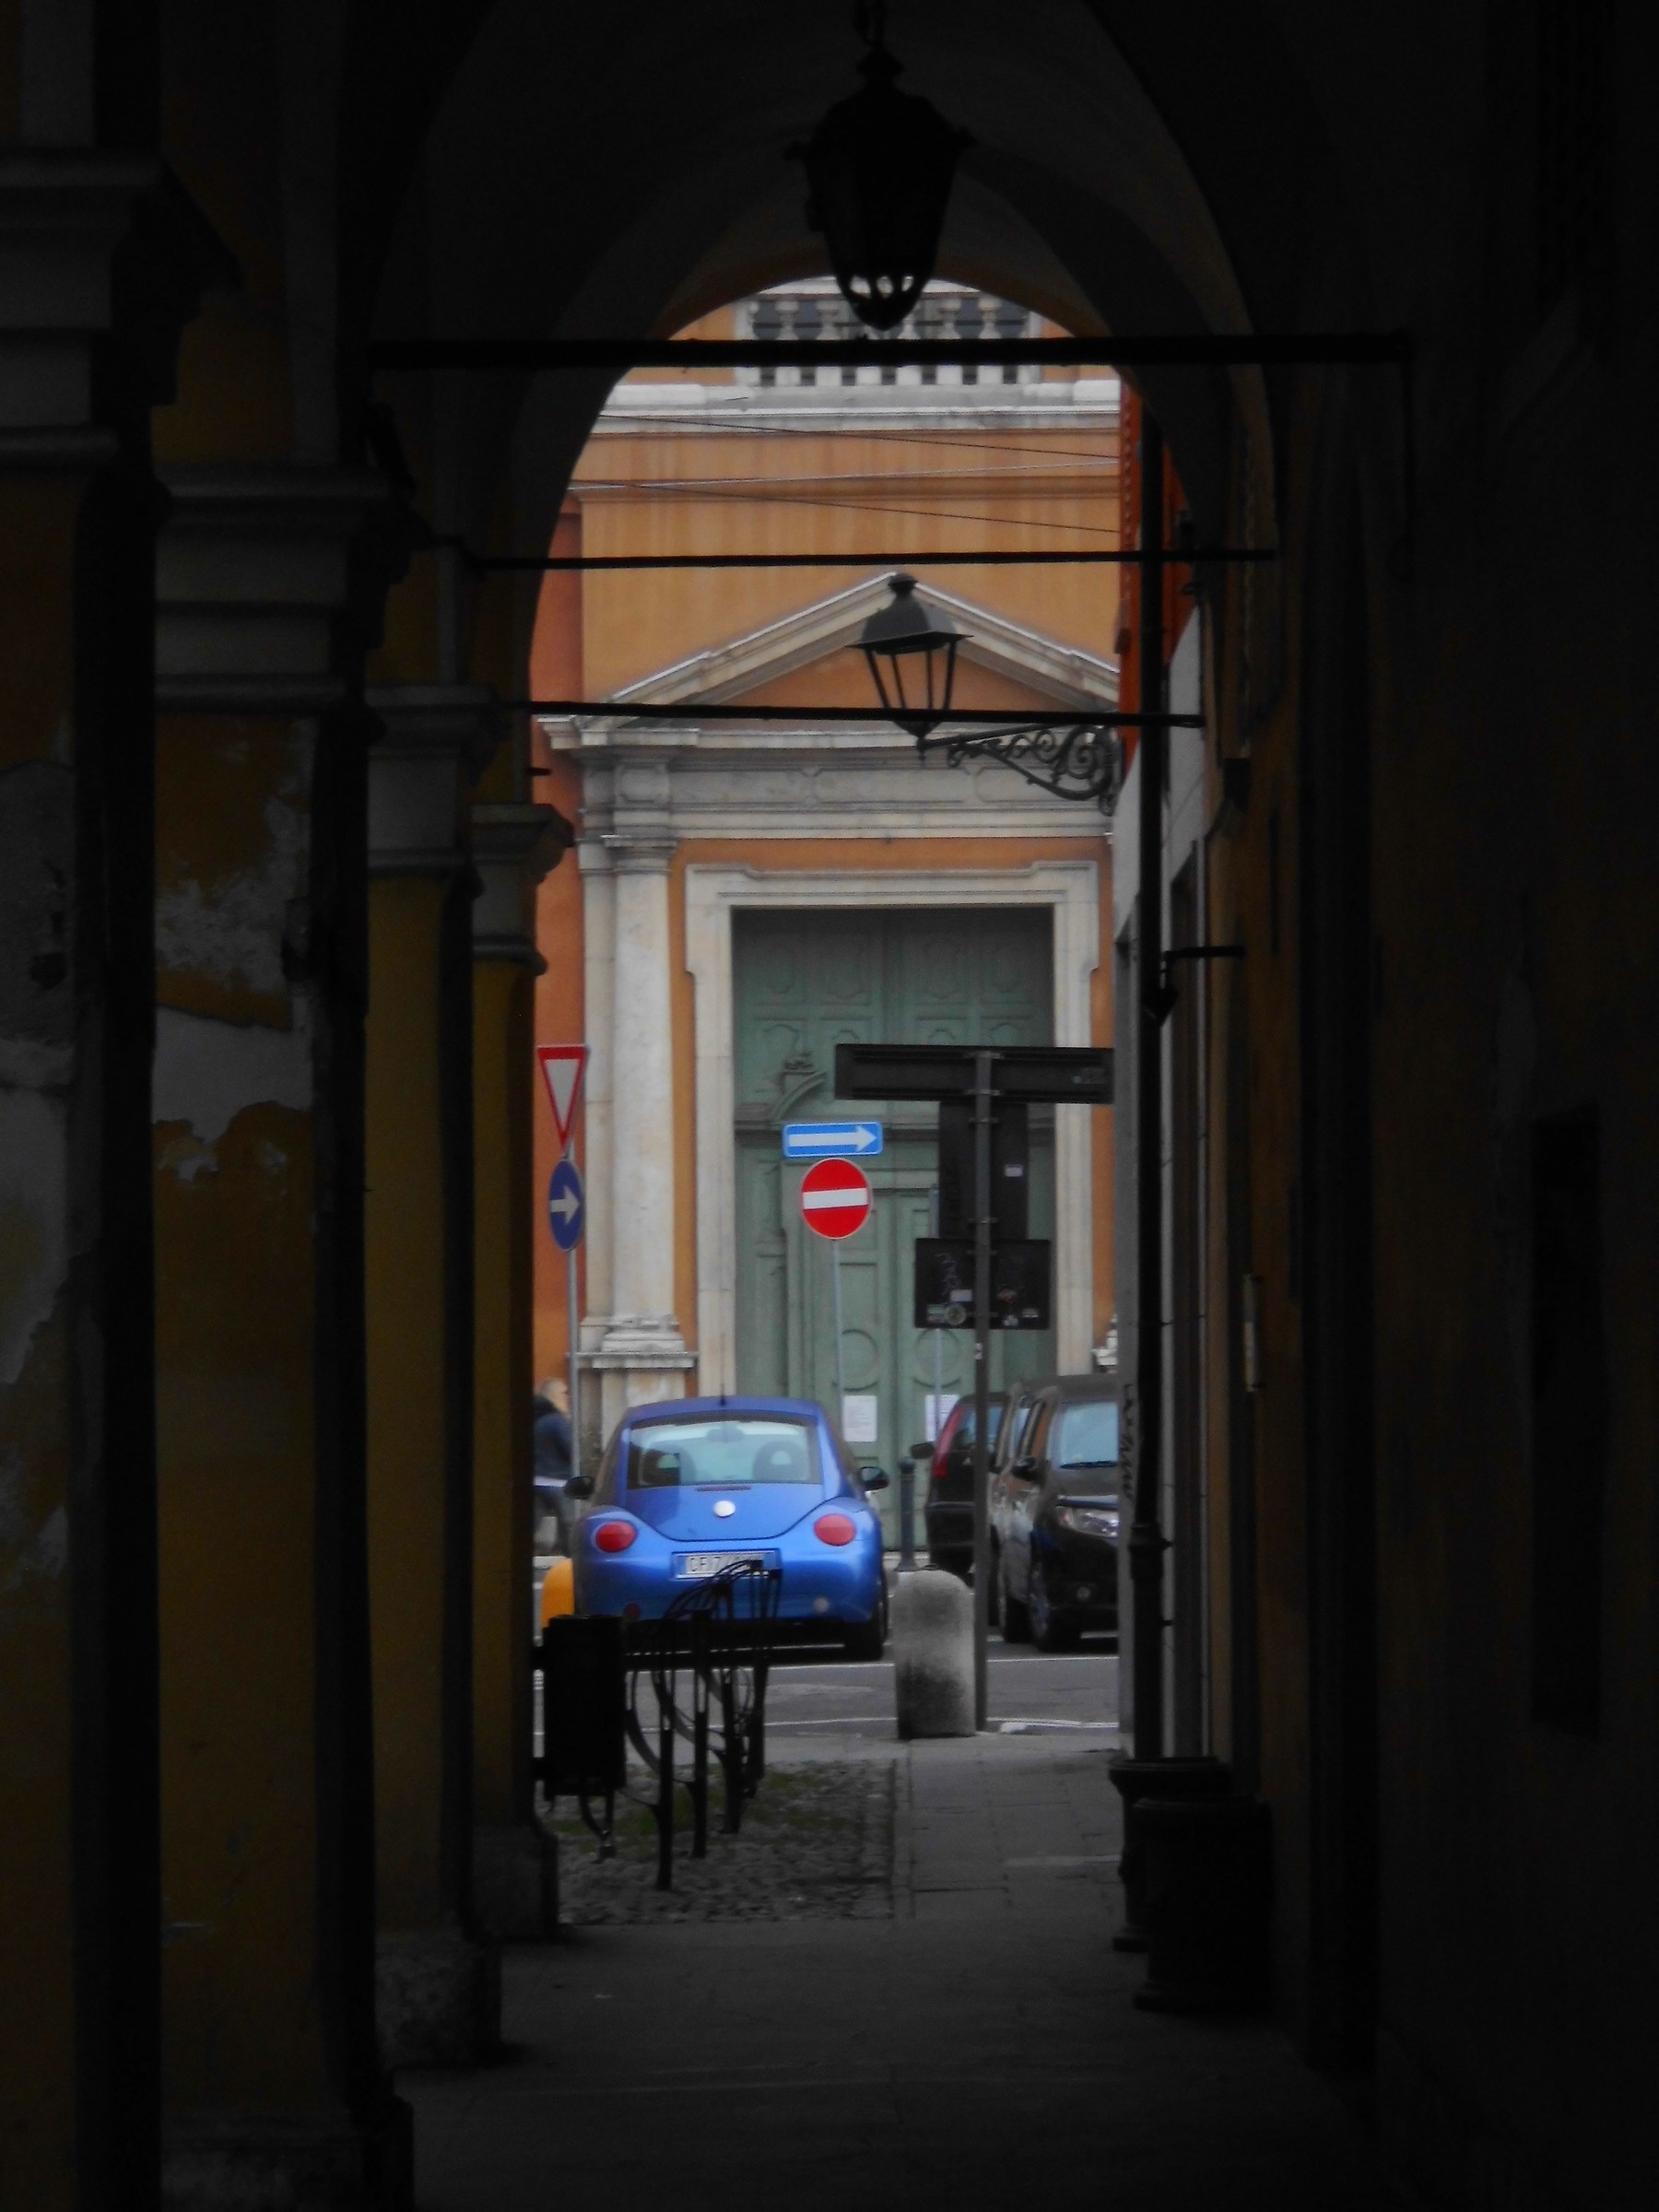 Passeggiando sotto i portici a San Domenico...